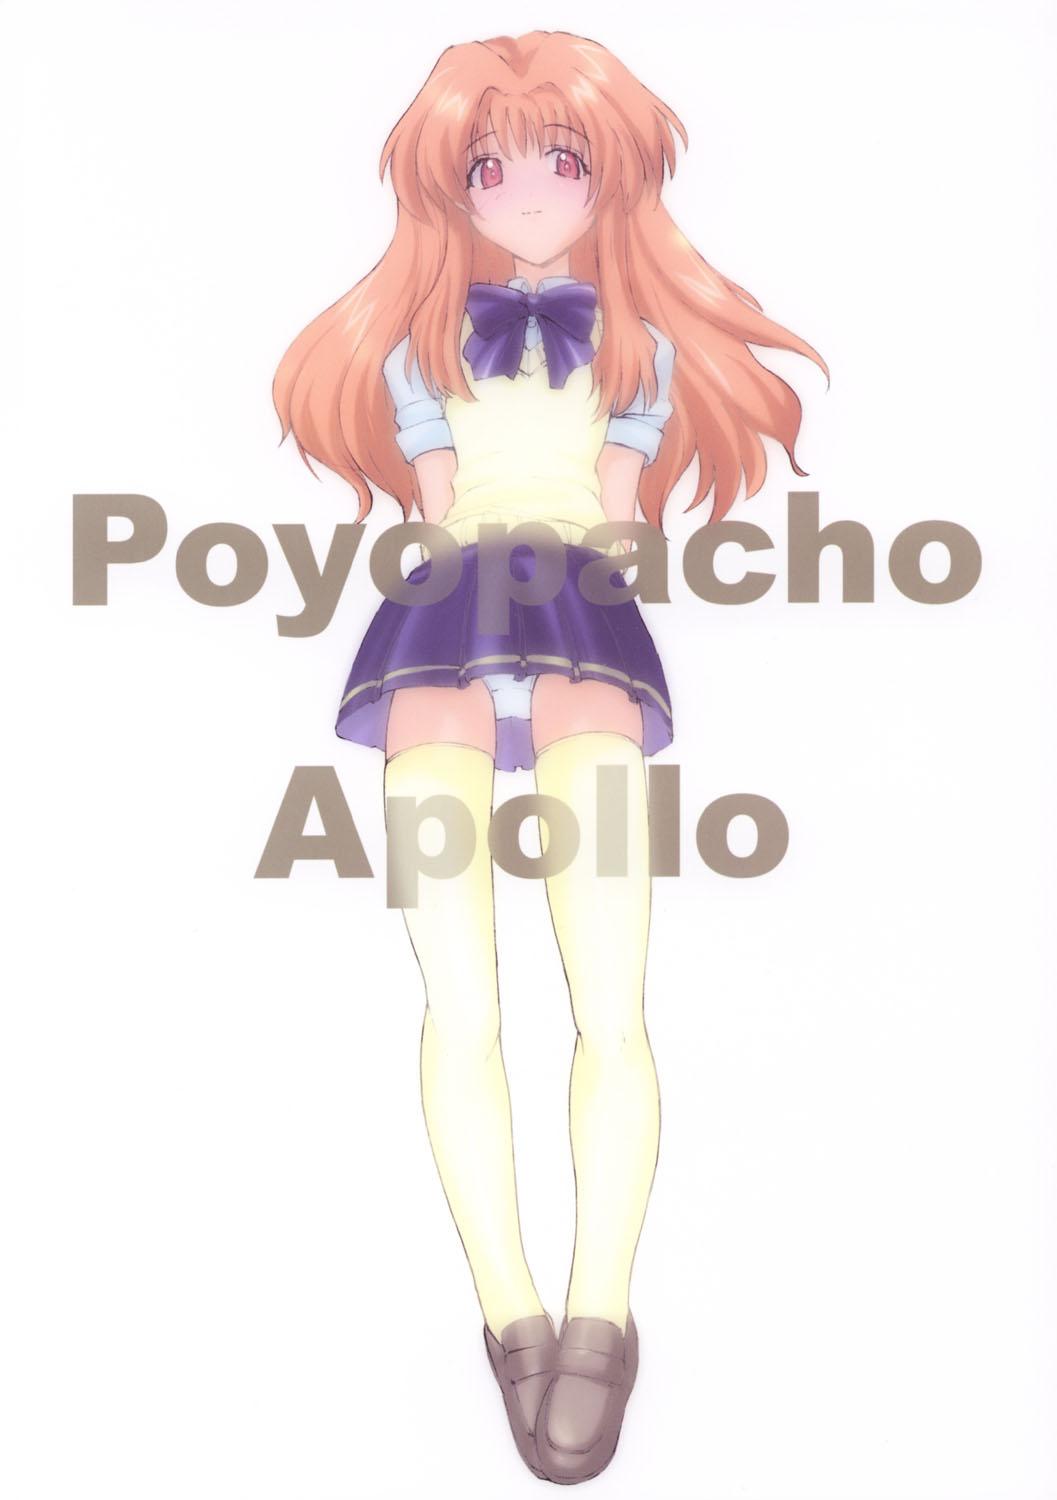 Poyopacho Apollo 27